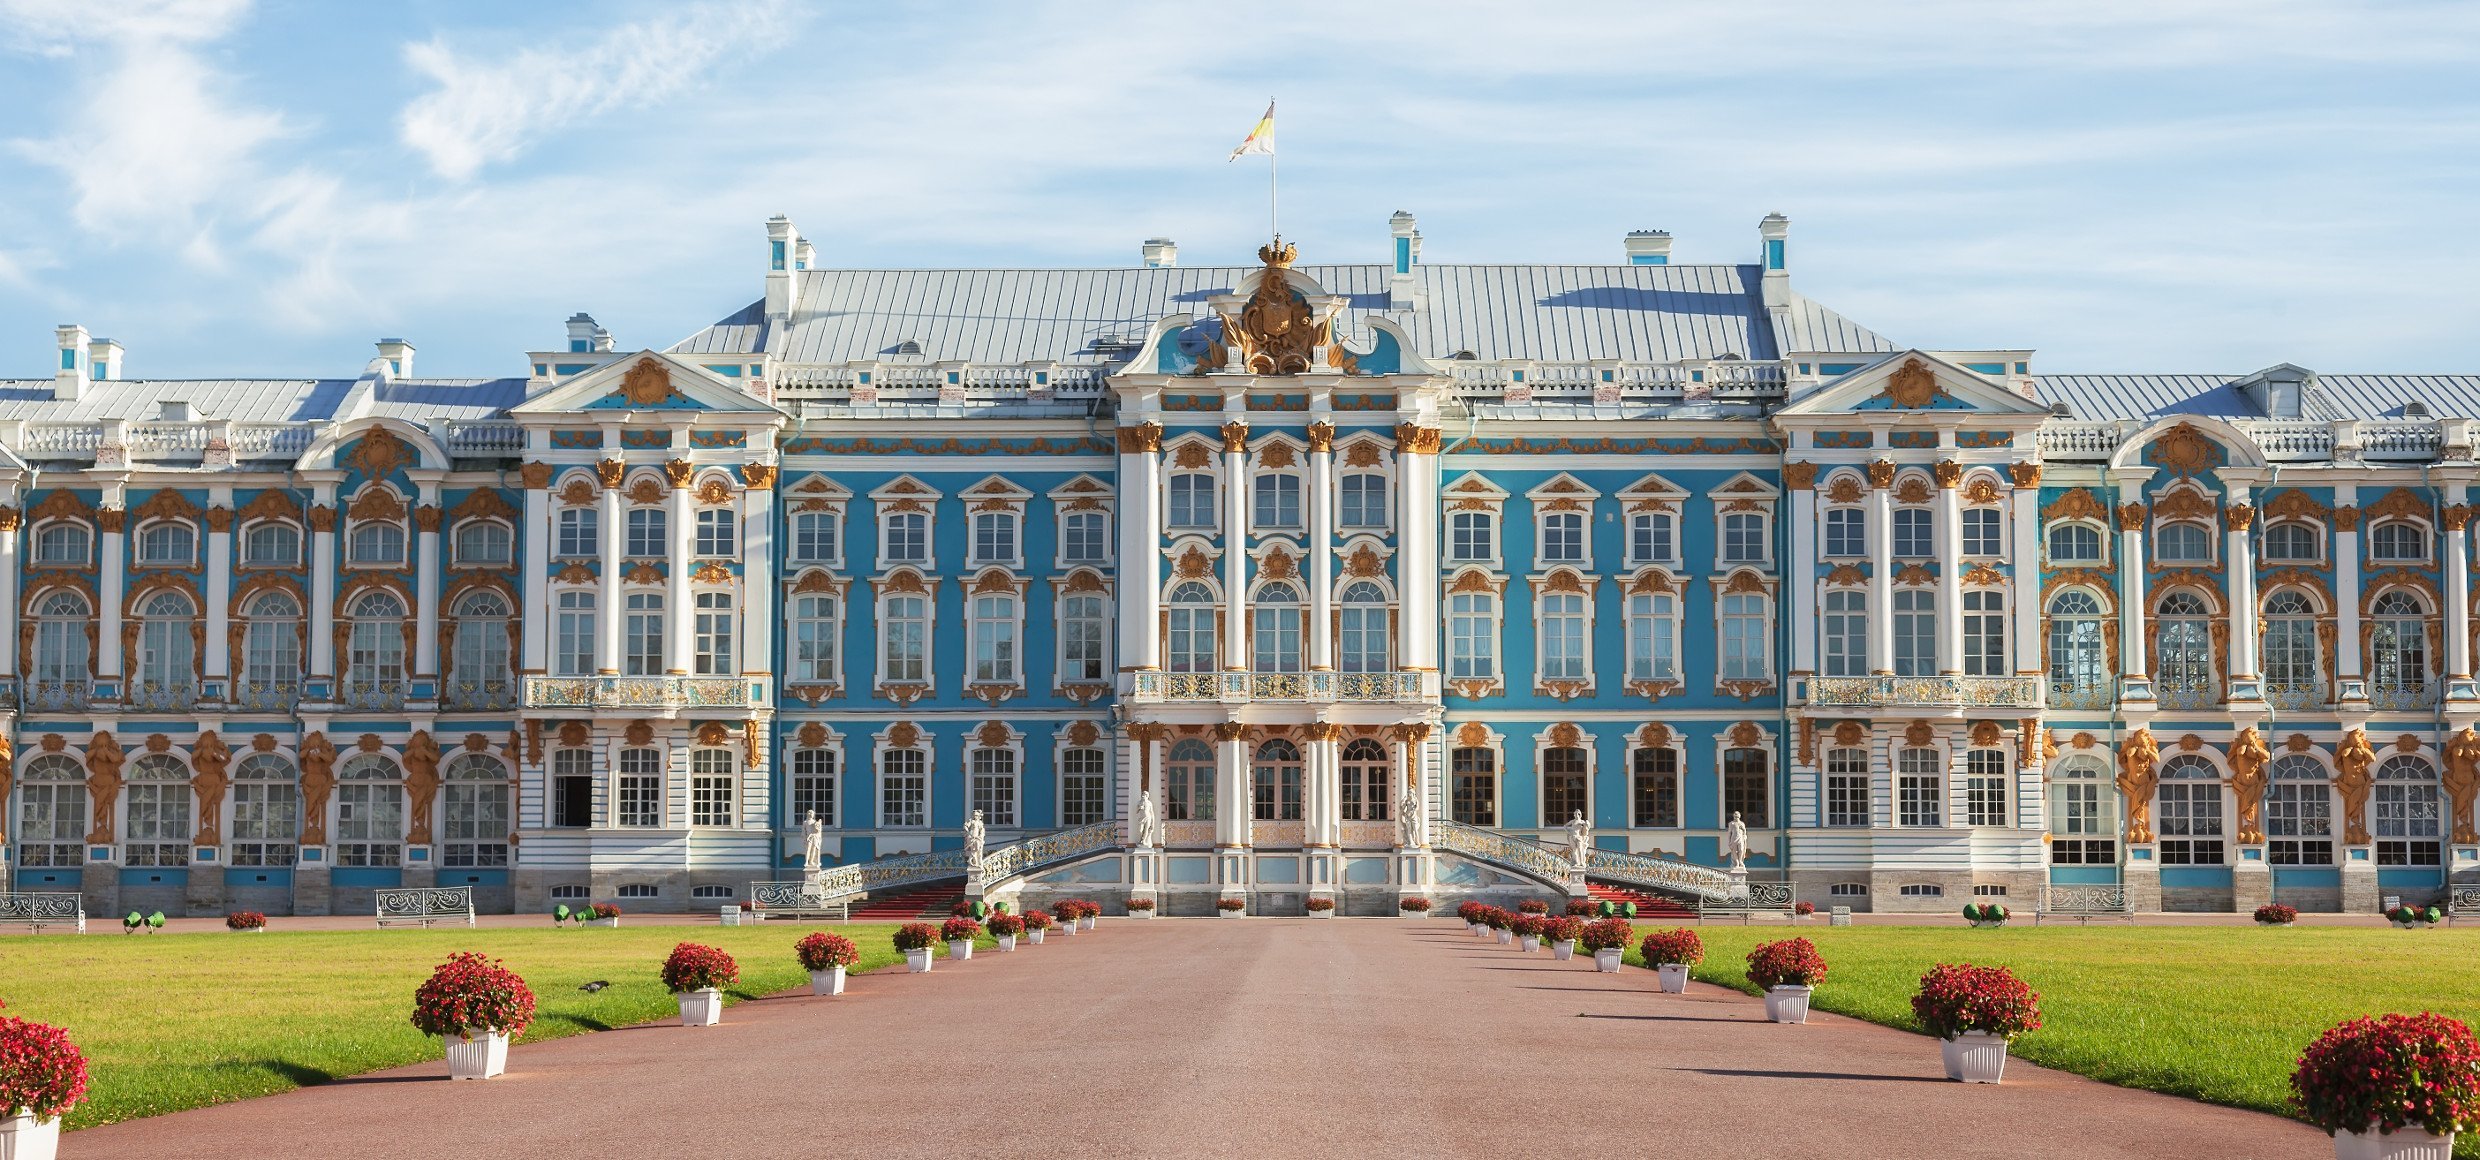 фотографии дворцов санкт петербурга